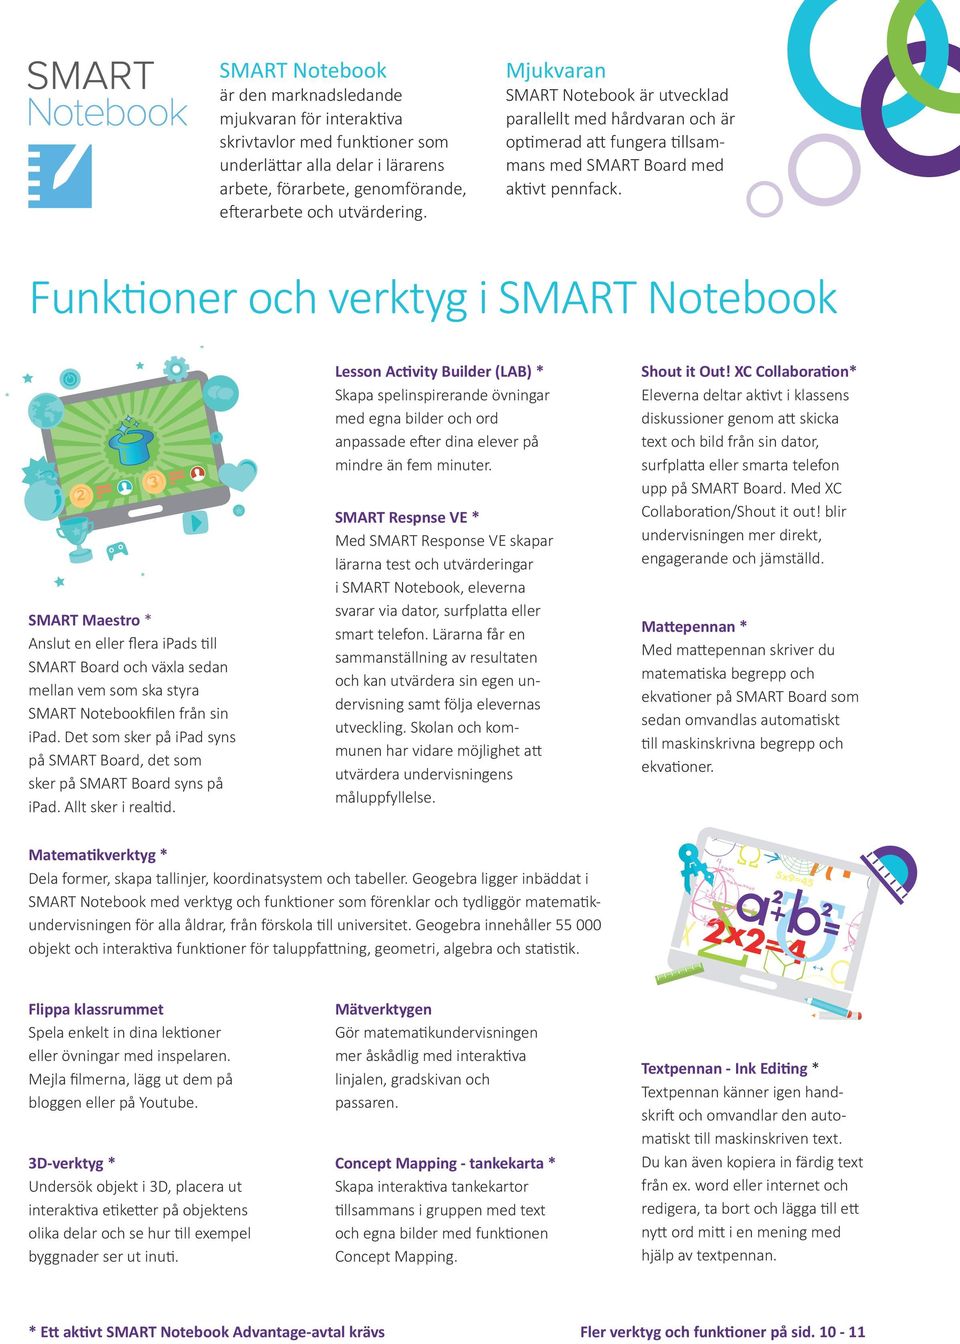 Funktioner och verktyg i SMART Notebook SMART Maestro * Anslut en eller flera ipads till SMART Board och växla sedan mellan vem som ska styra SMART Notebookfilen från sin ipad.